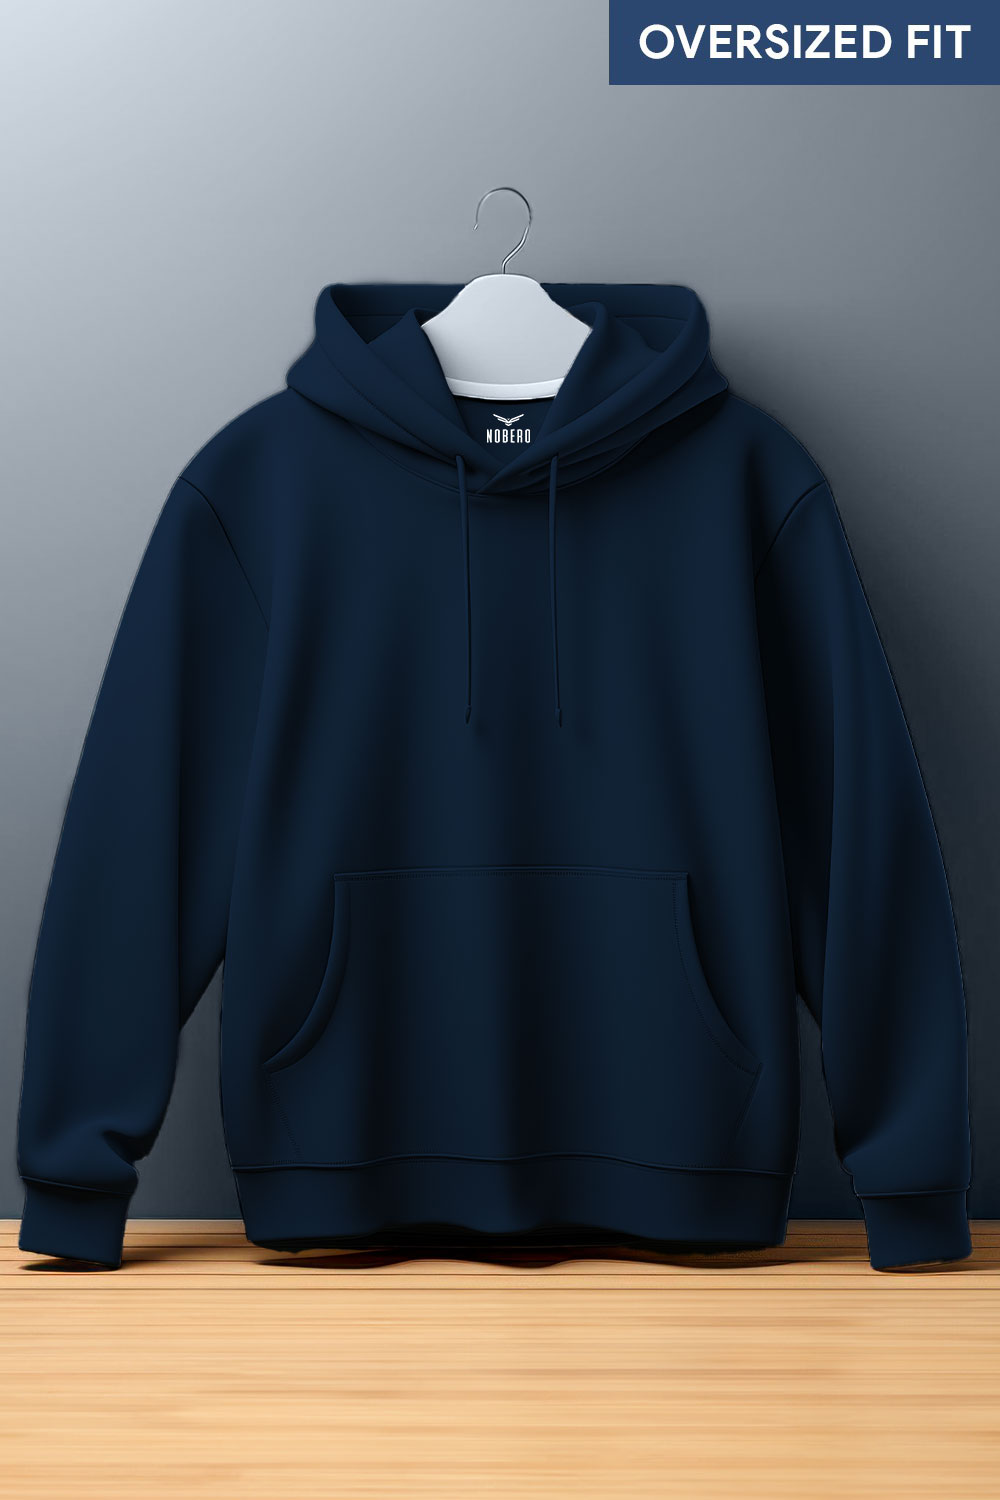 Sweatshirt jacket with a hood - dark blue